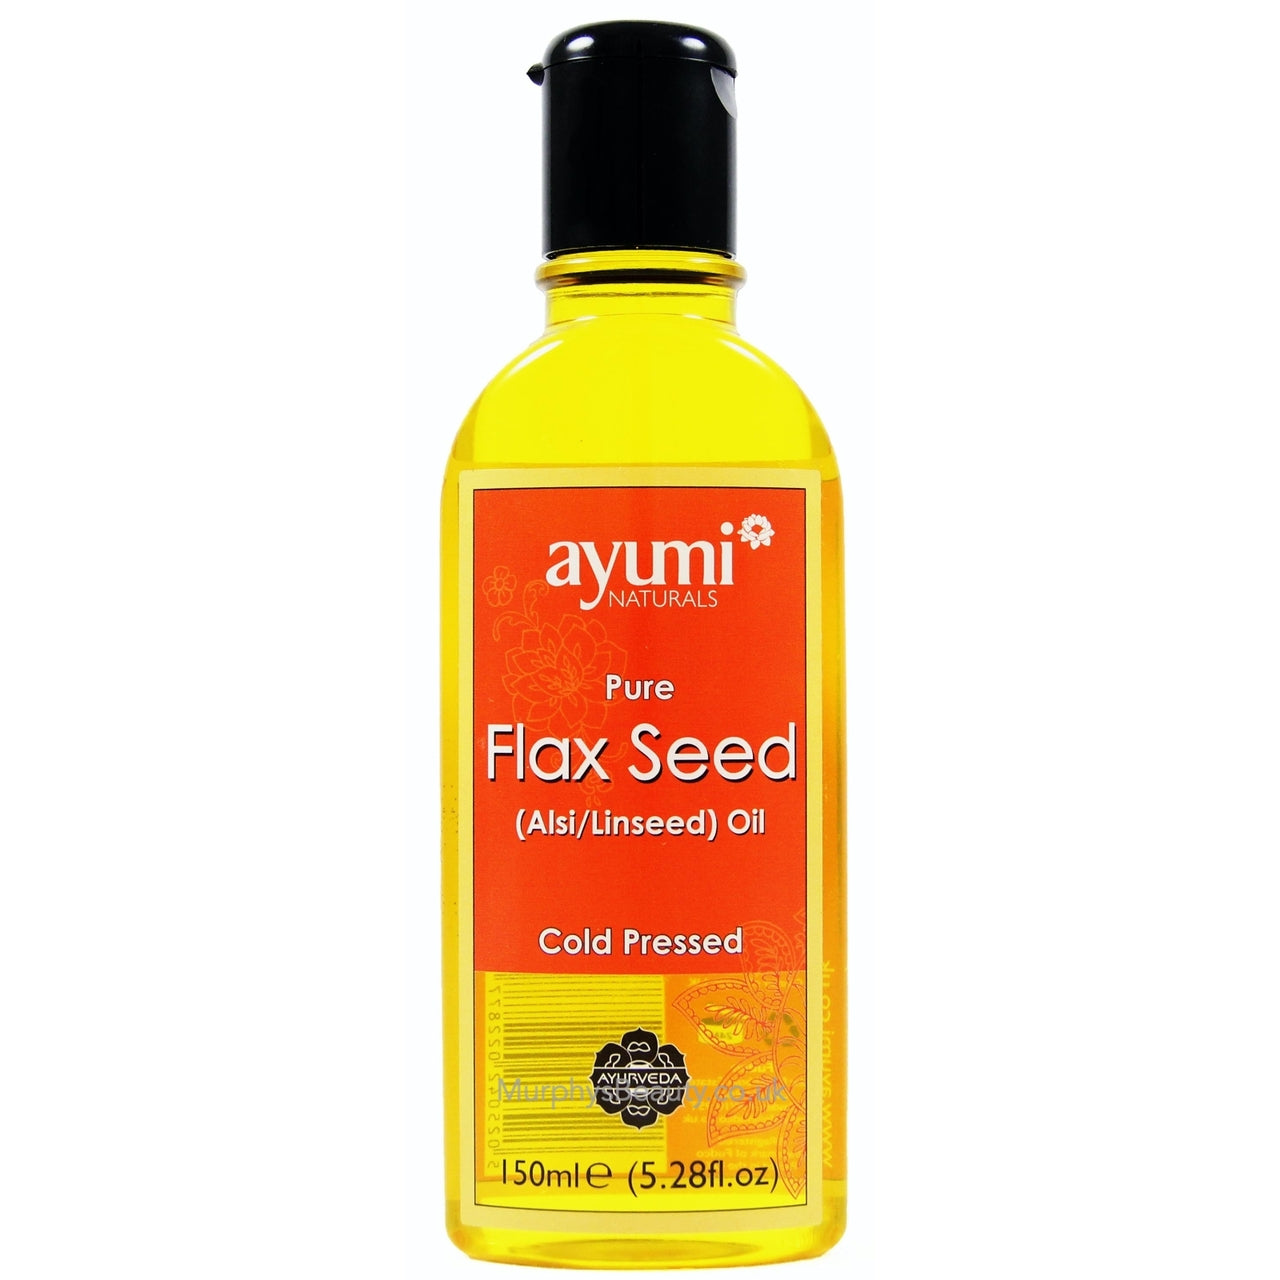 AYURRI Pure flax seed oil 150 ml